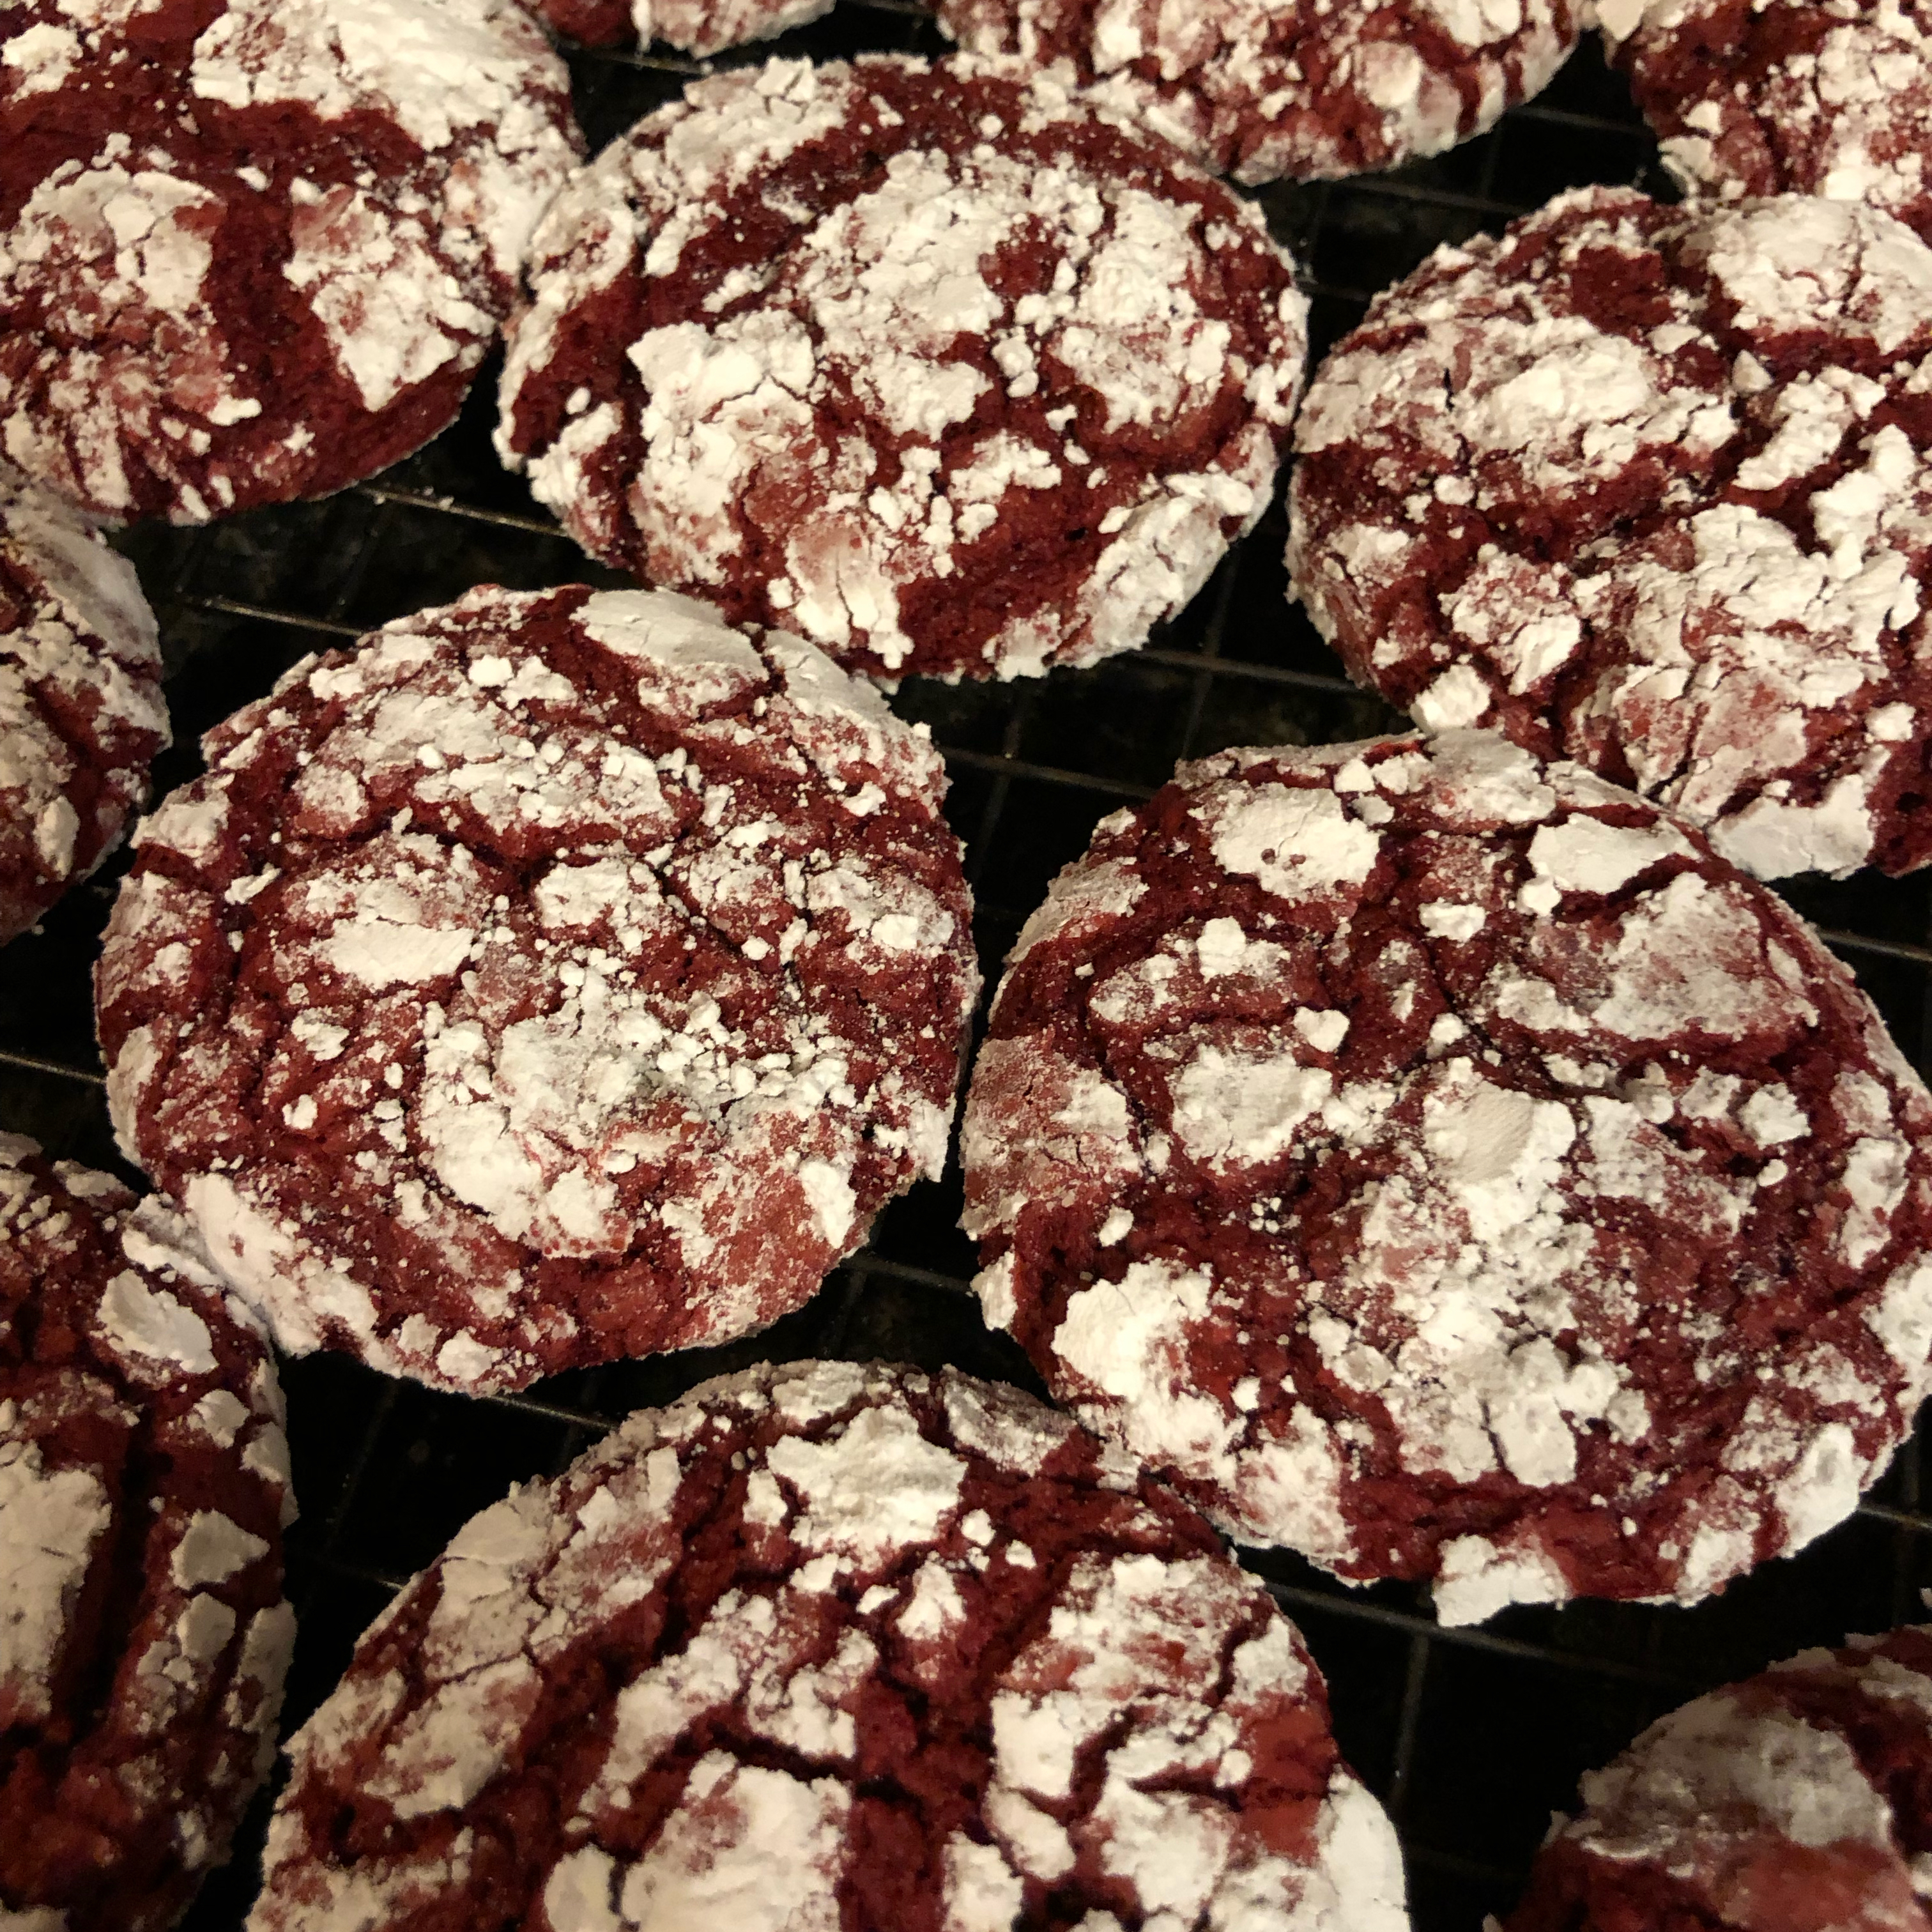 Red Velvet Crinkle Cookies 